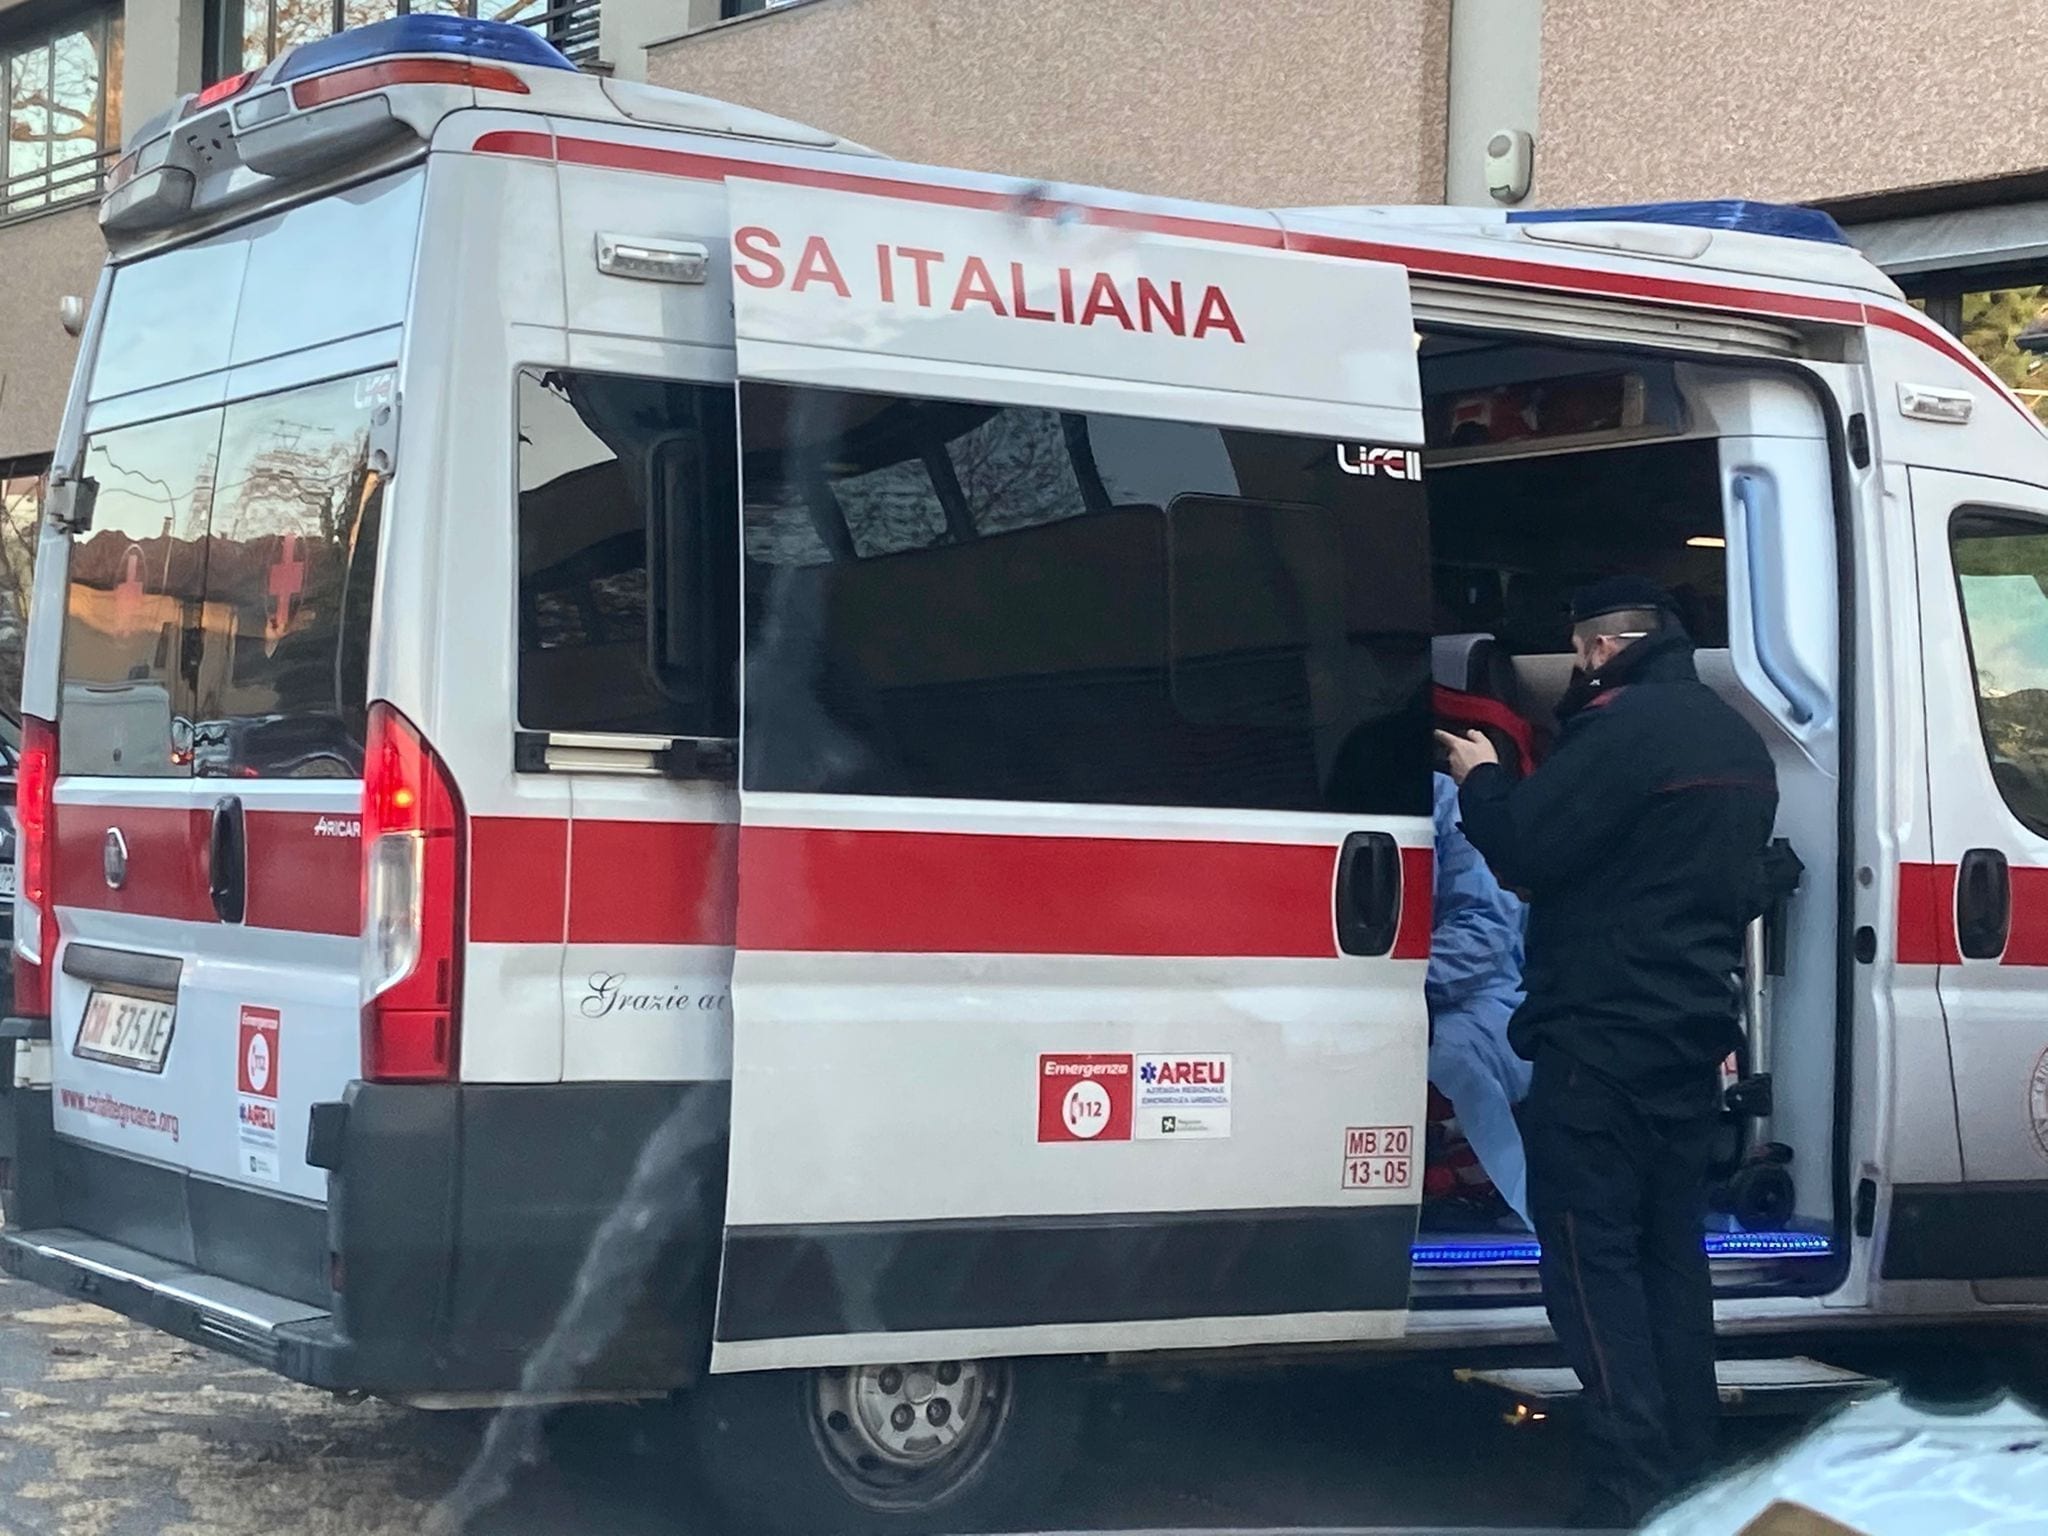 Malore in via Varese a Saronno: intossicazione etilica